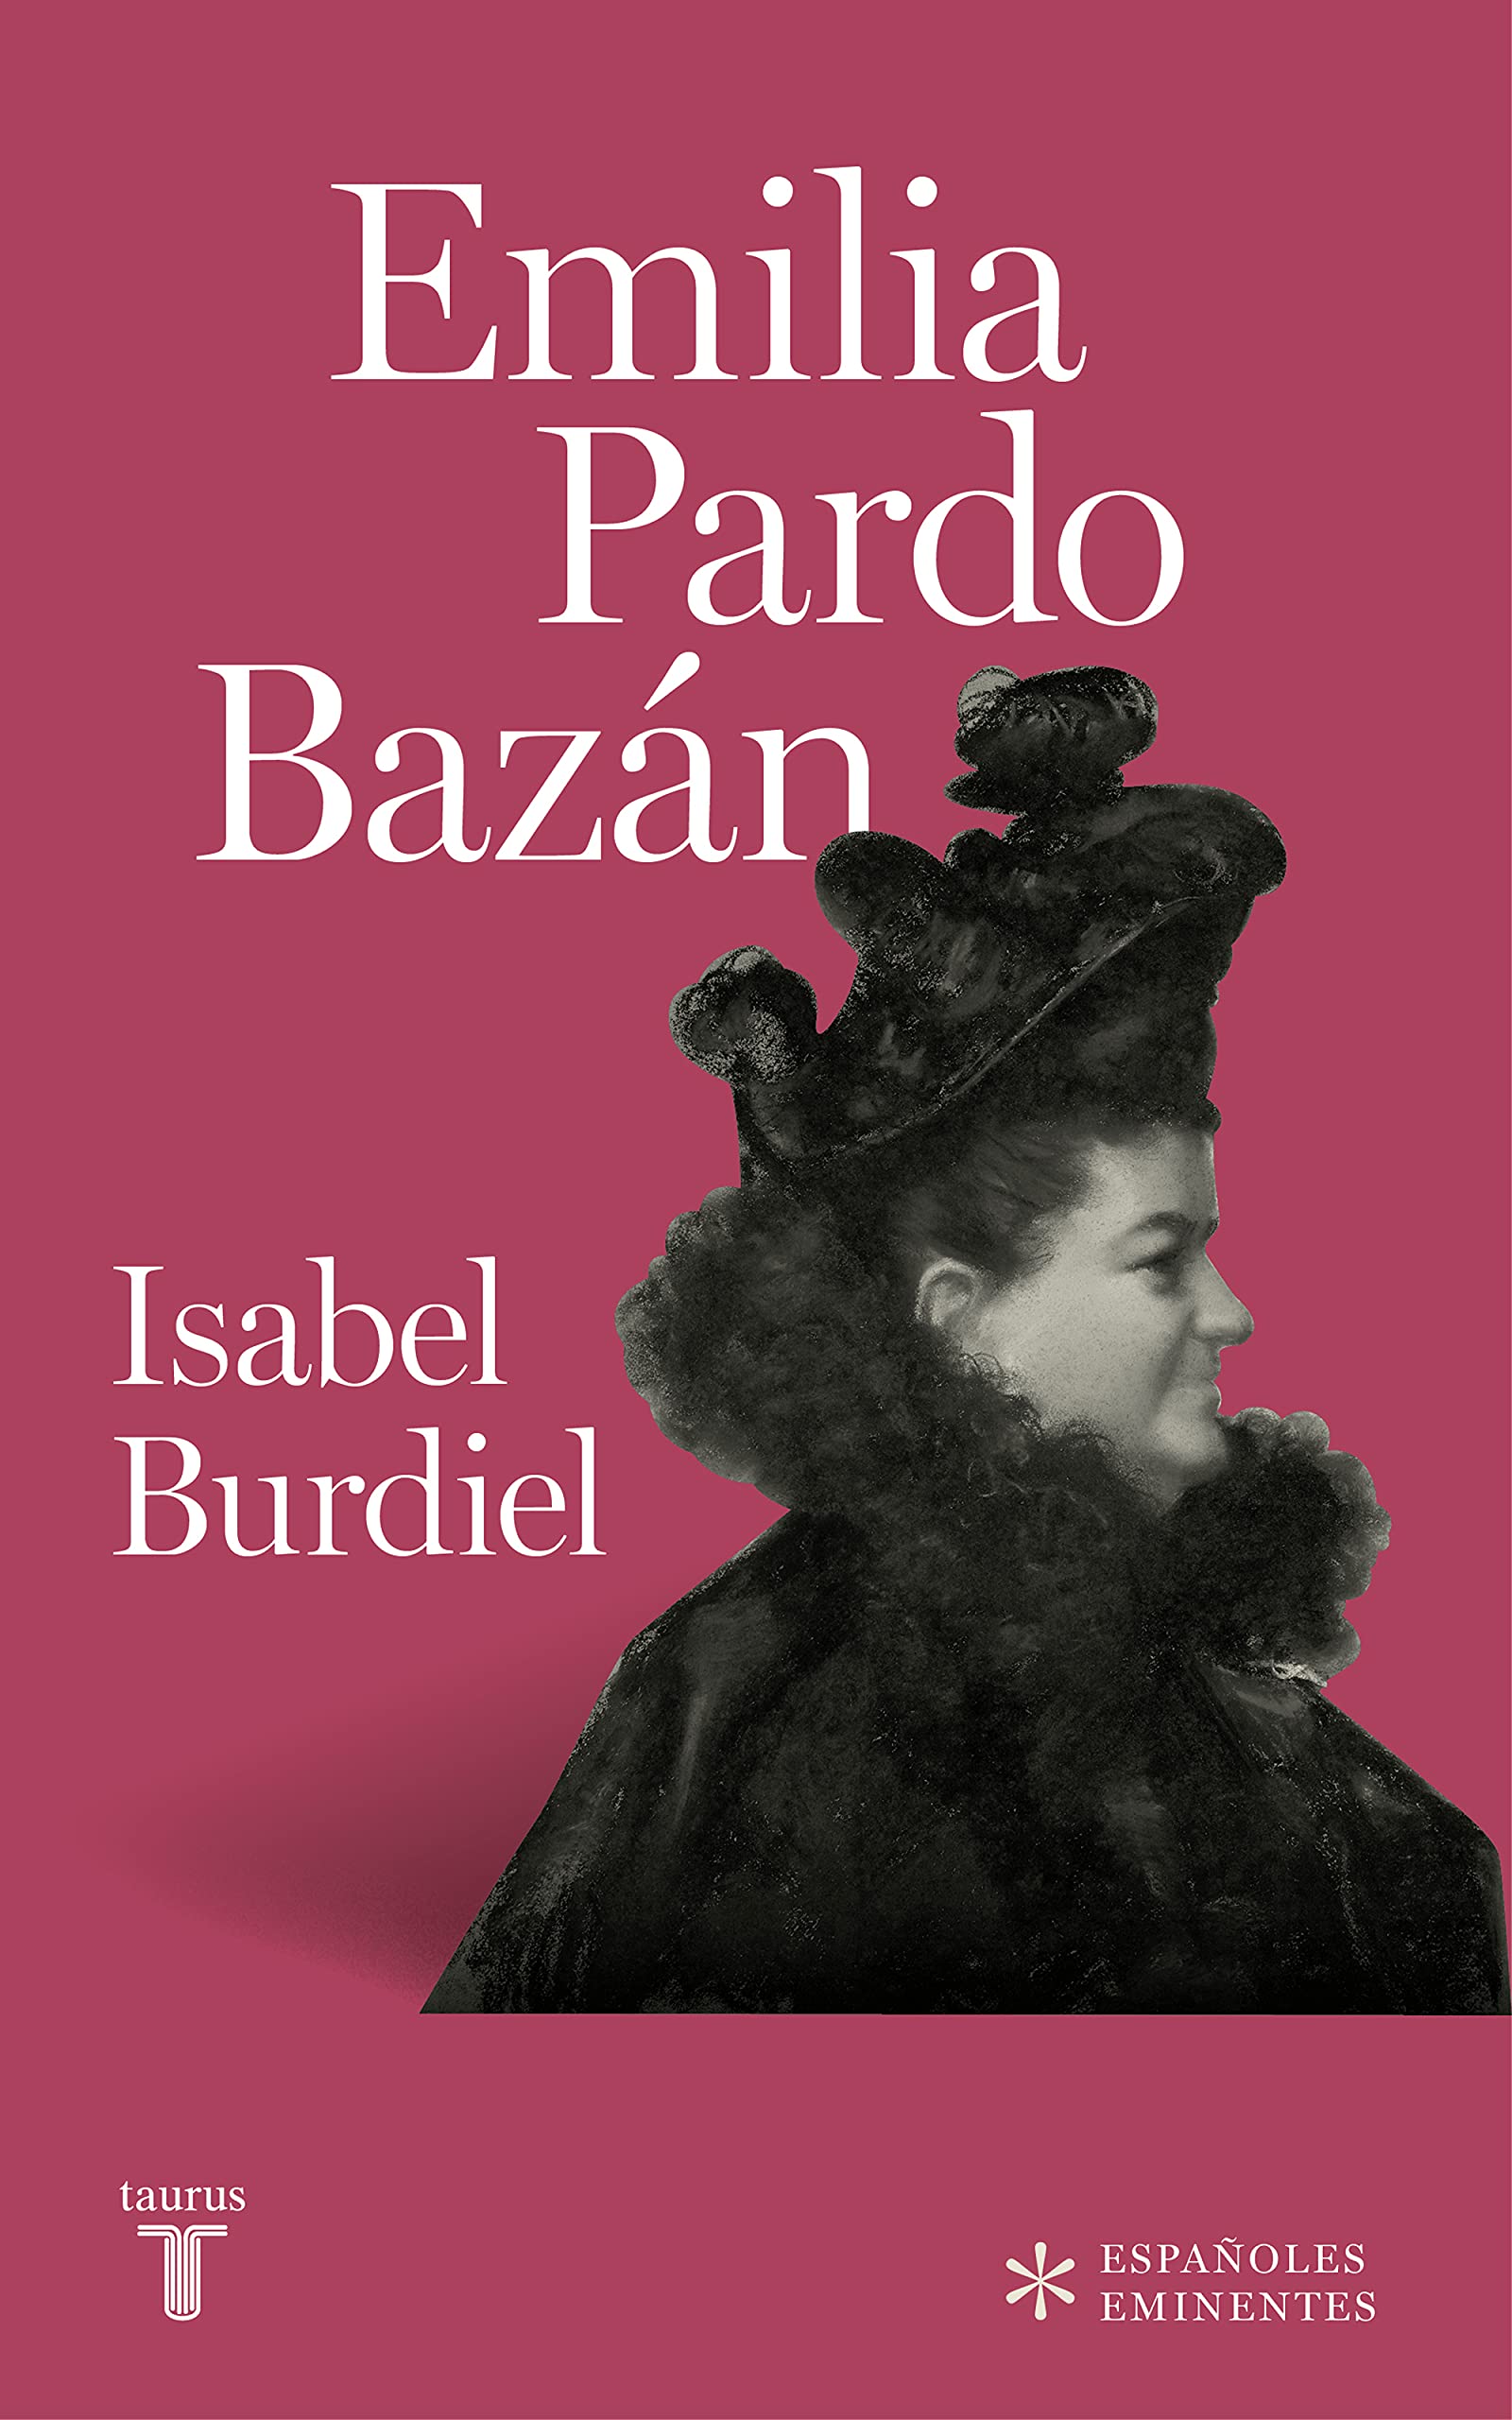 Emilia Pardo Bazán, de Isabel Burdiel